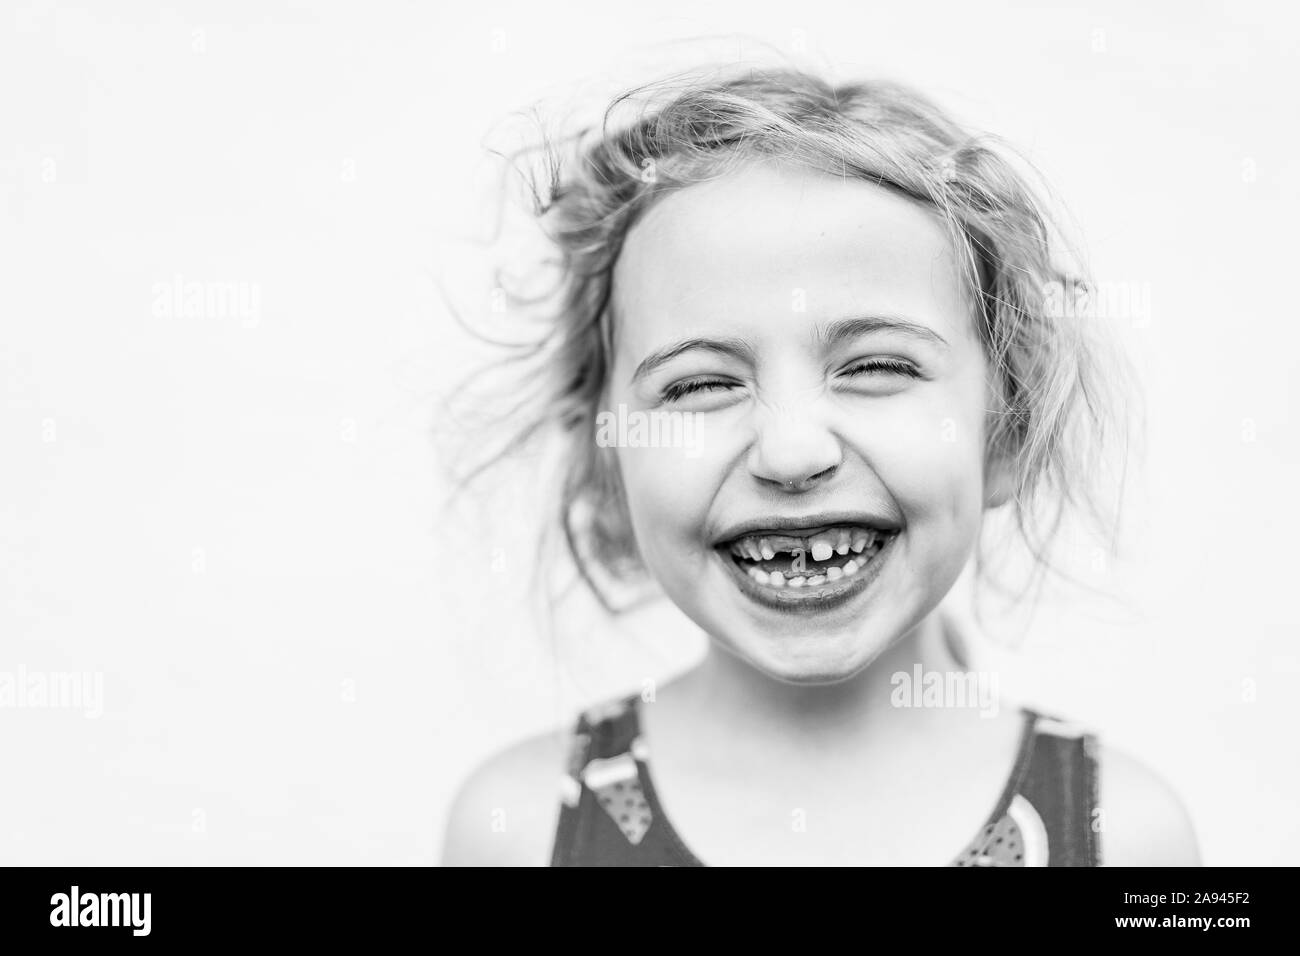 Ein Porträt von einem kleinen Mädchen fehlt Ihrem vorderen Zahn. Stockfoto